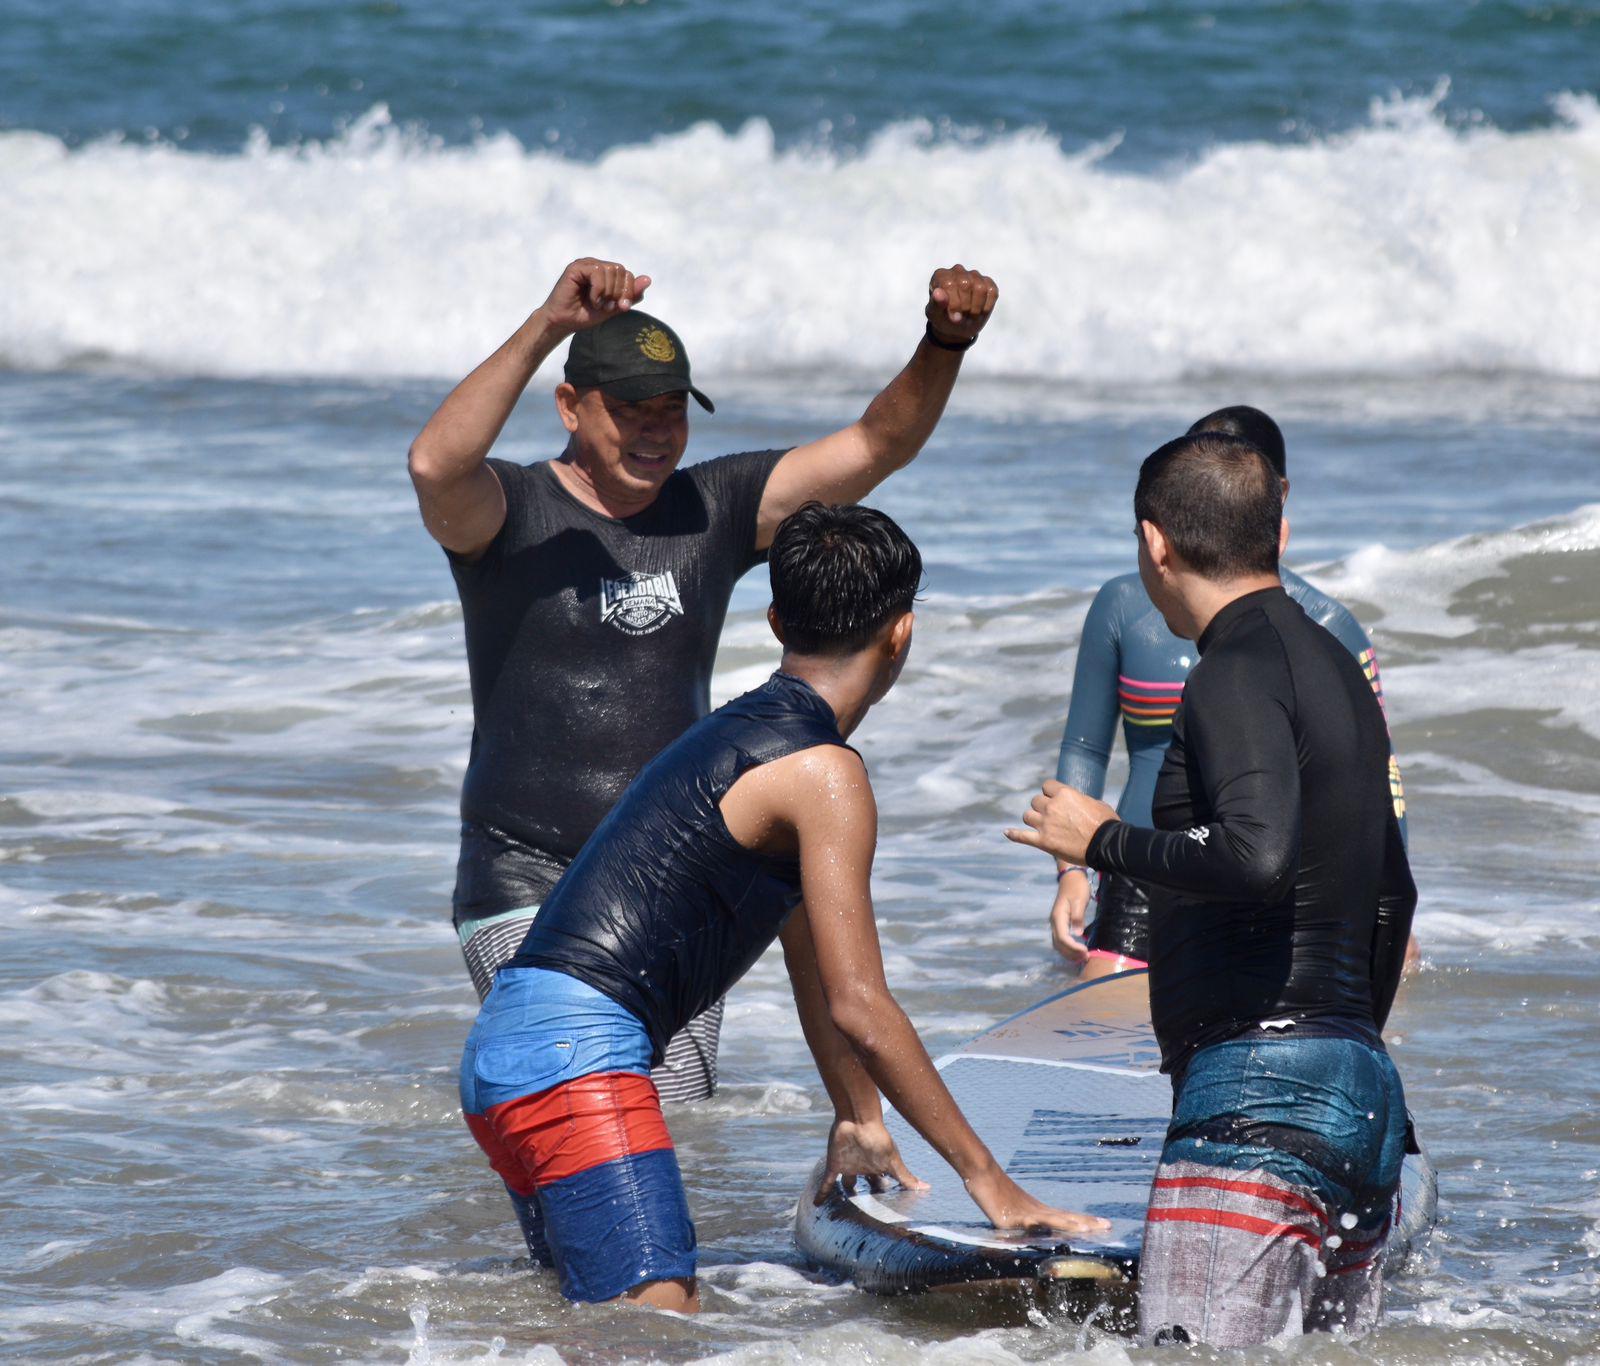 $!Fomentan inclusión y unión familiar a través del surfing